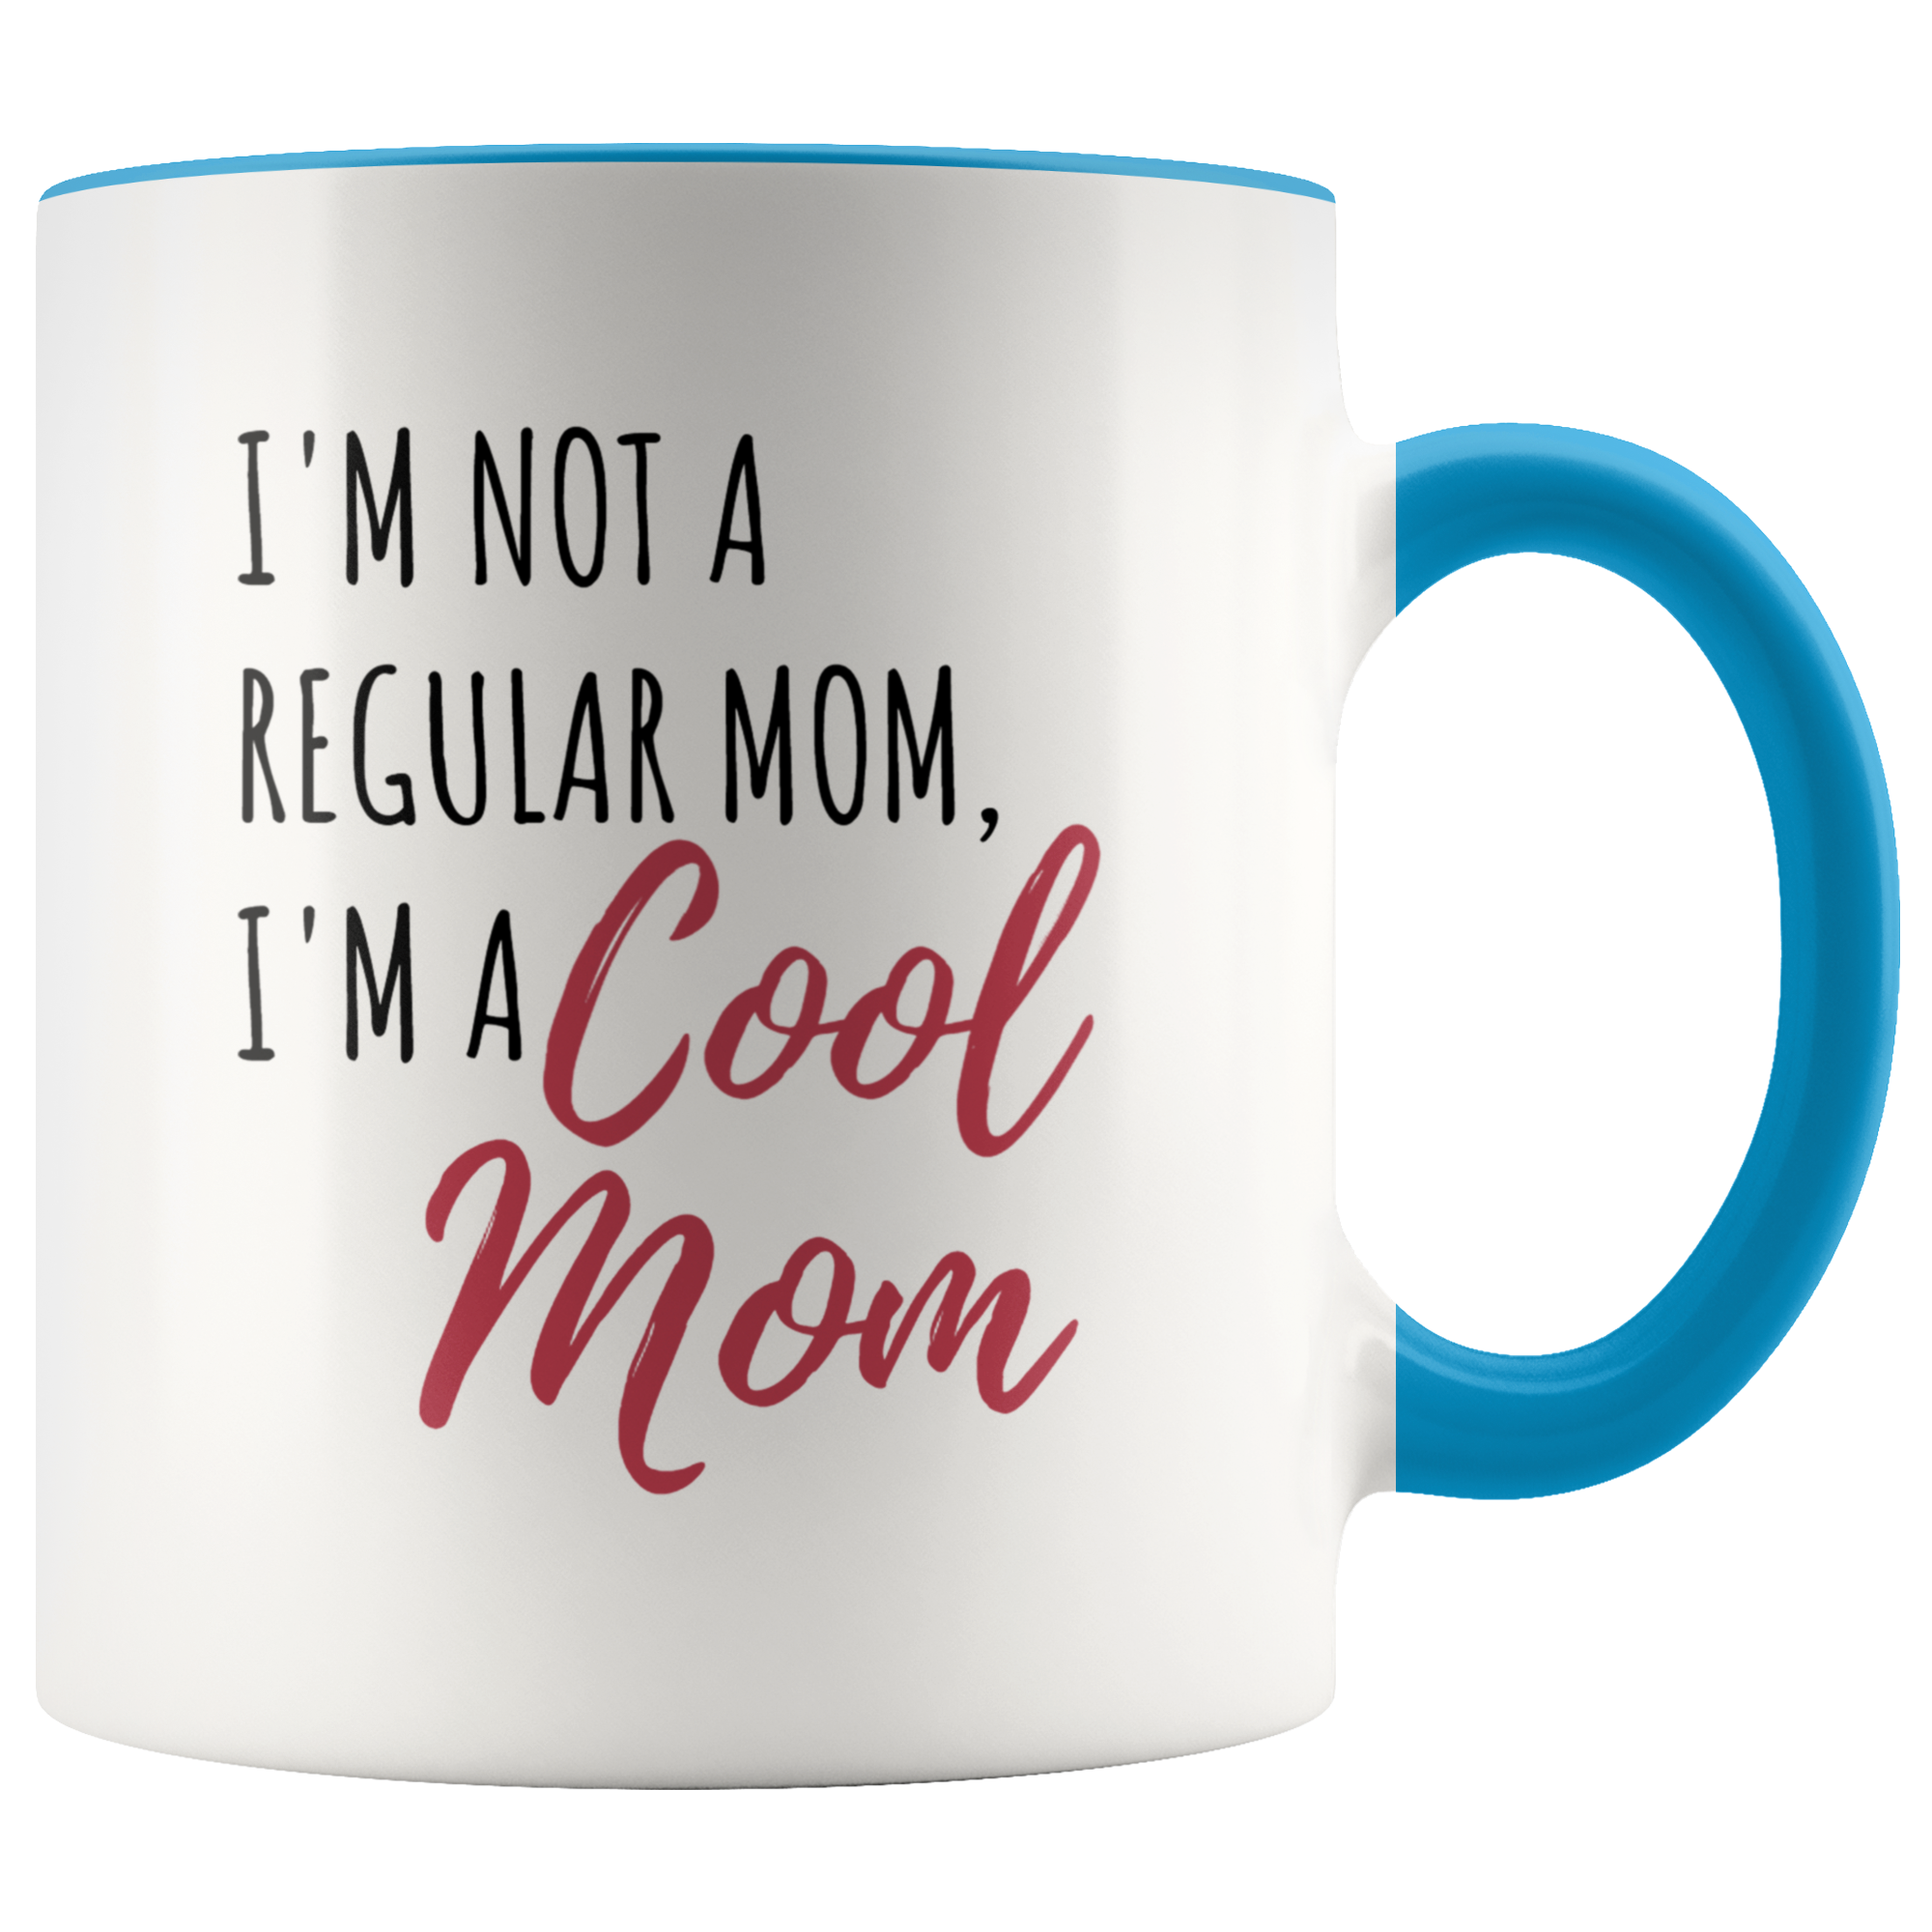 Cool Mom Mug